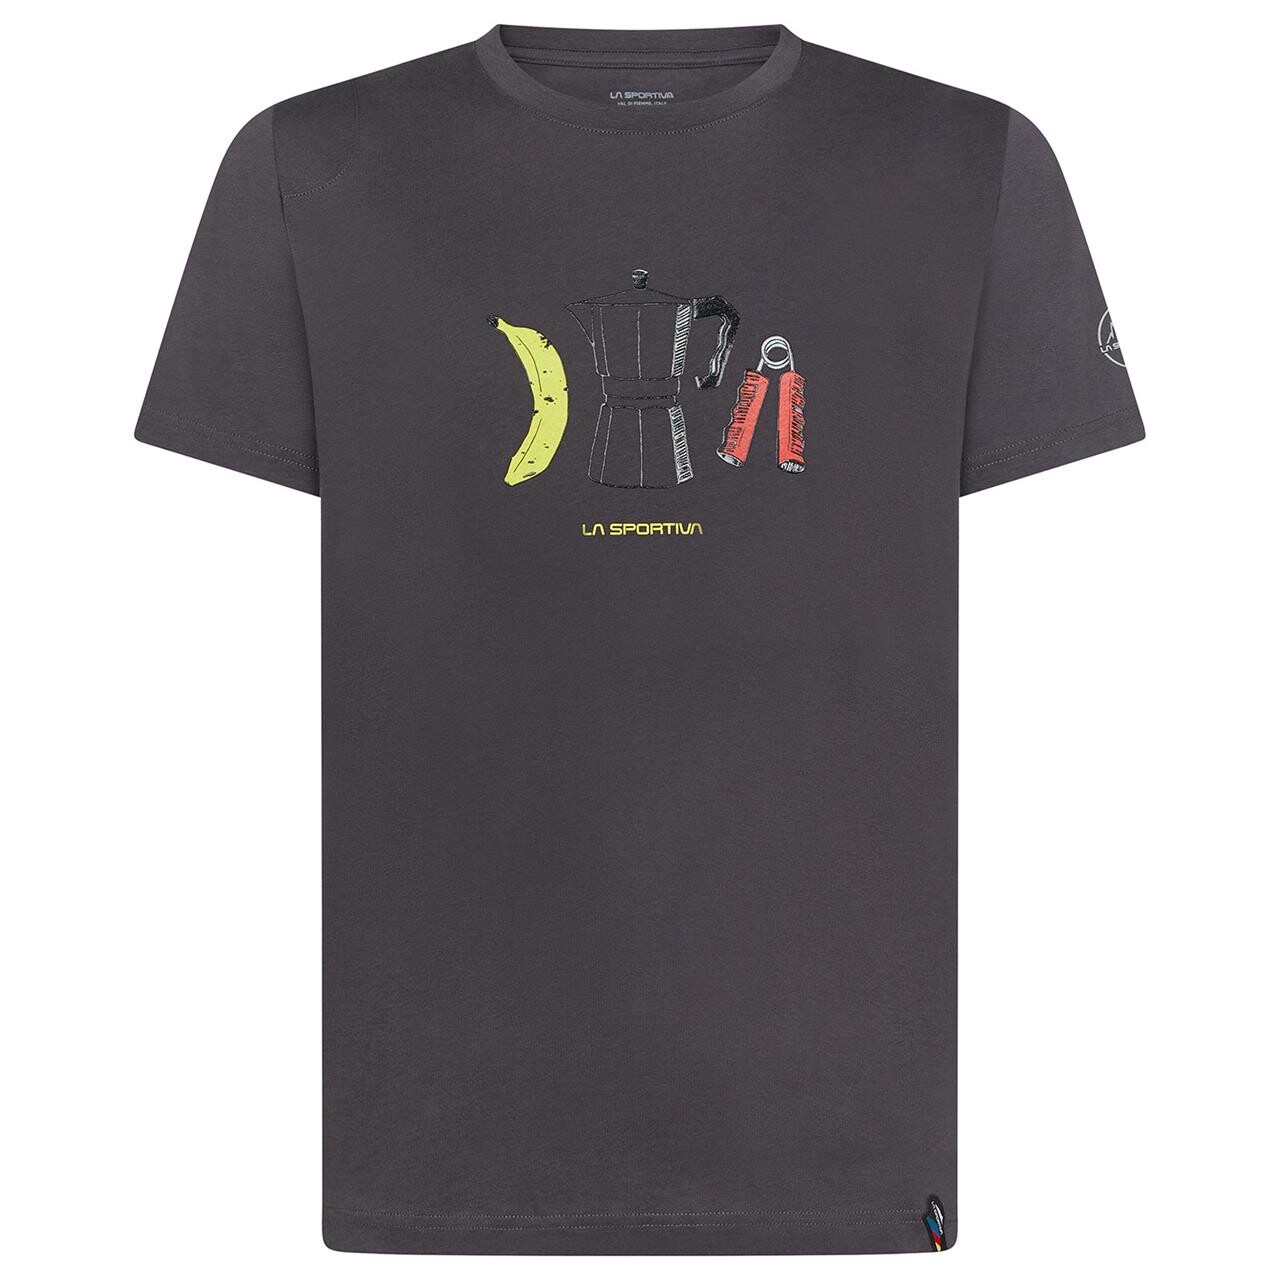 5: La Sportiva Mens Breakfast T-shirt  (Grå (CARBON) Medium)